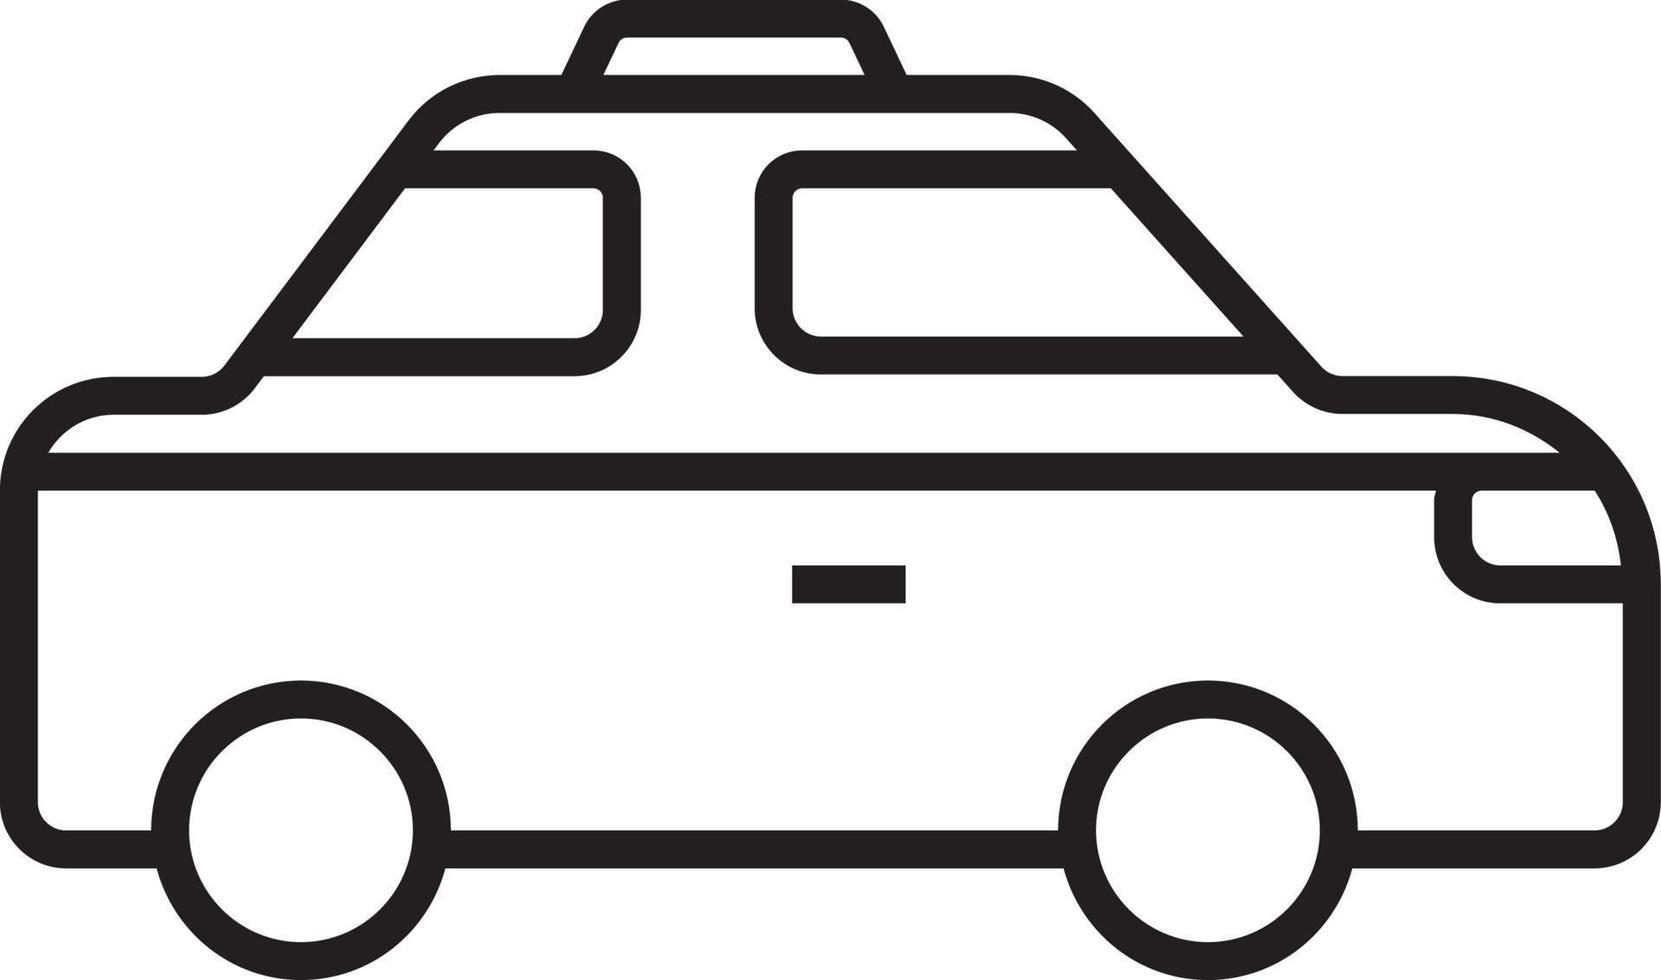 Taxi mezzi di trasporto icona persone icone con nero schema stile. veicolo, simbolo, trasporto, linea, schema, stazione, viaggiare, automobile, modificabile, pittogramma, isolato, piatto. vettore illustrazione